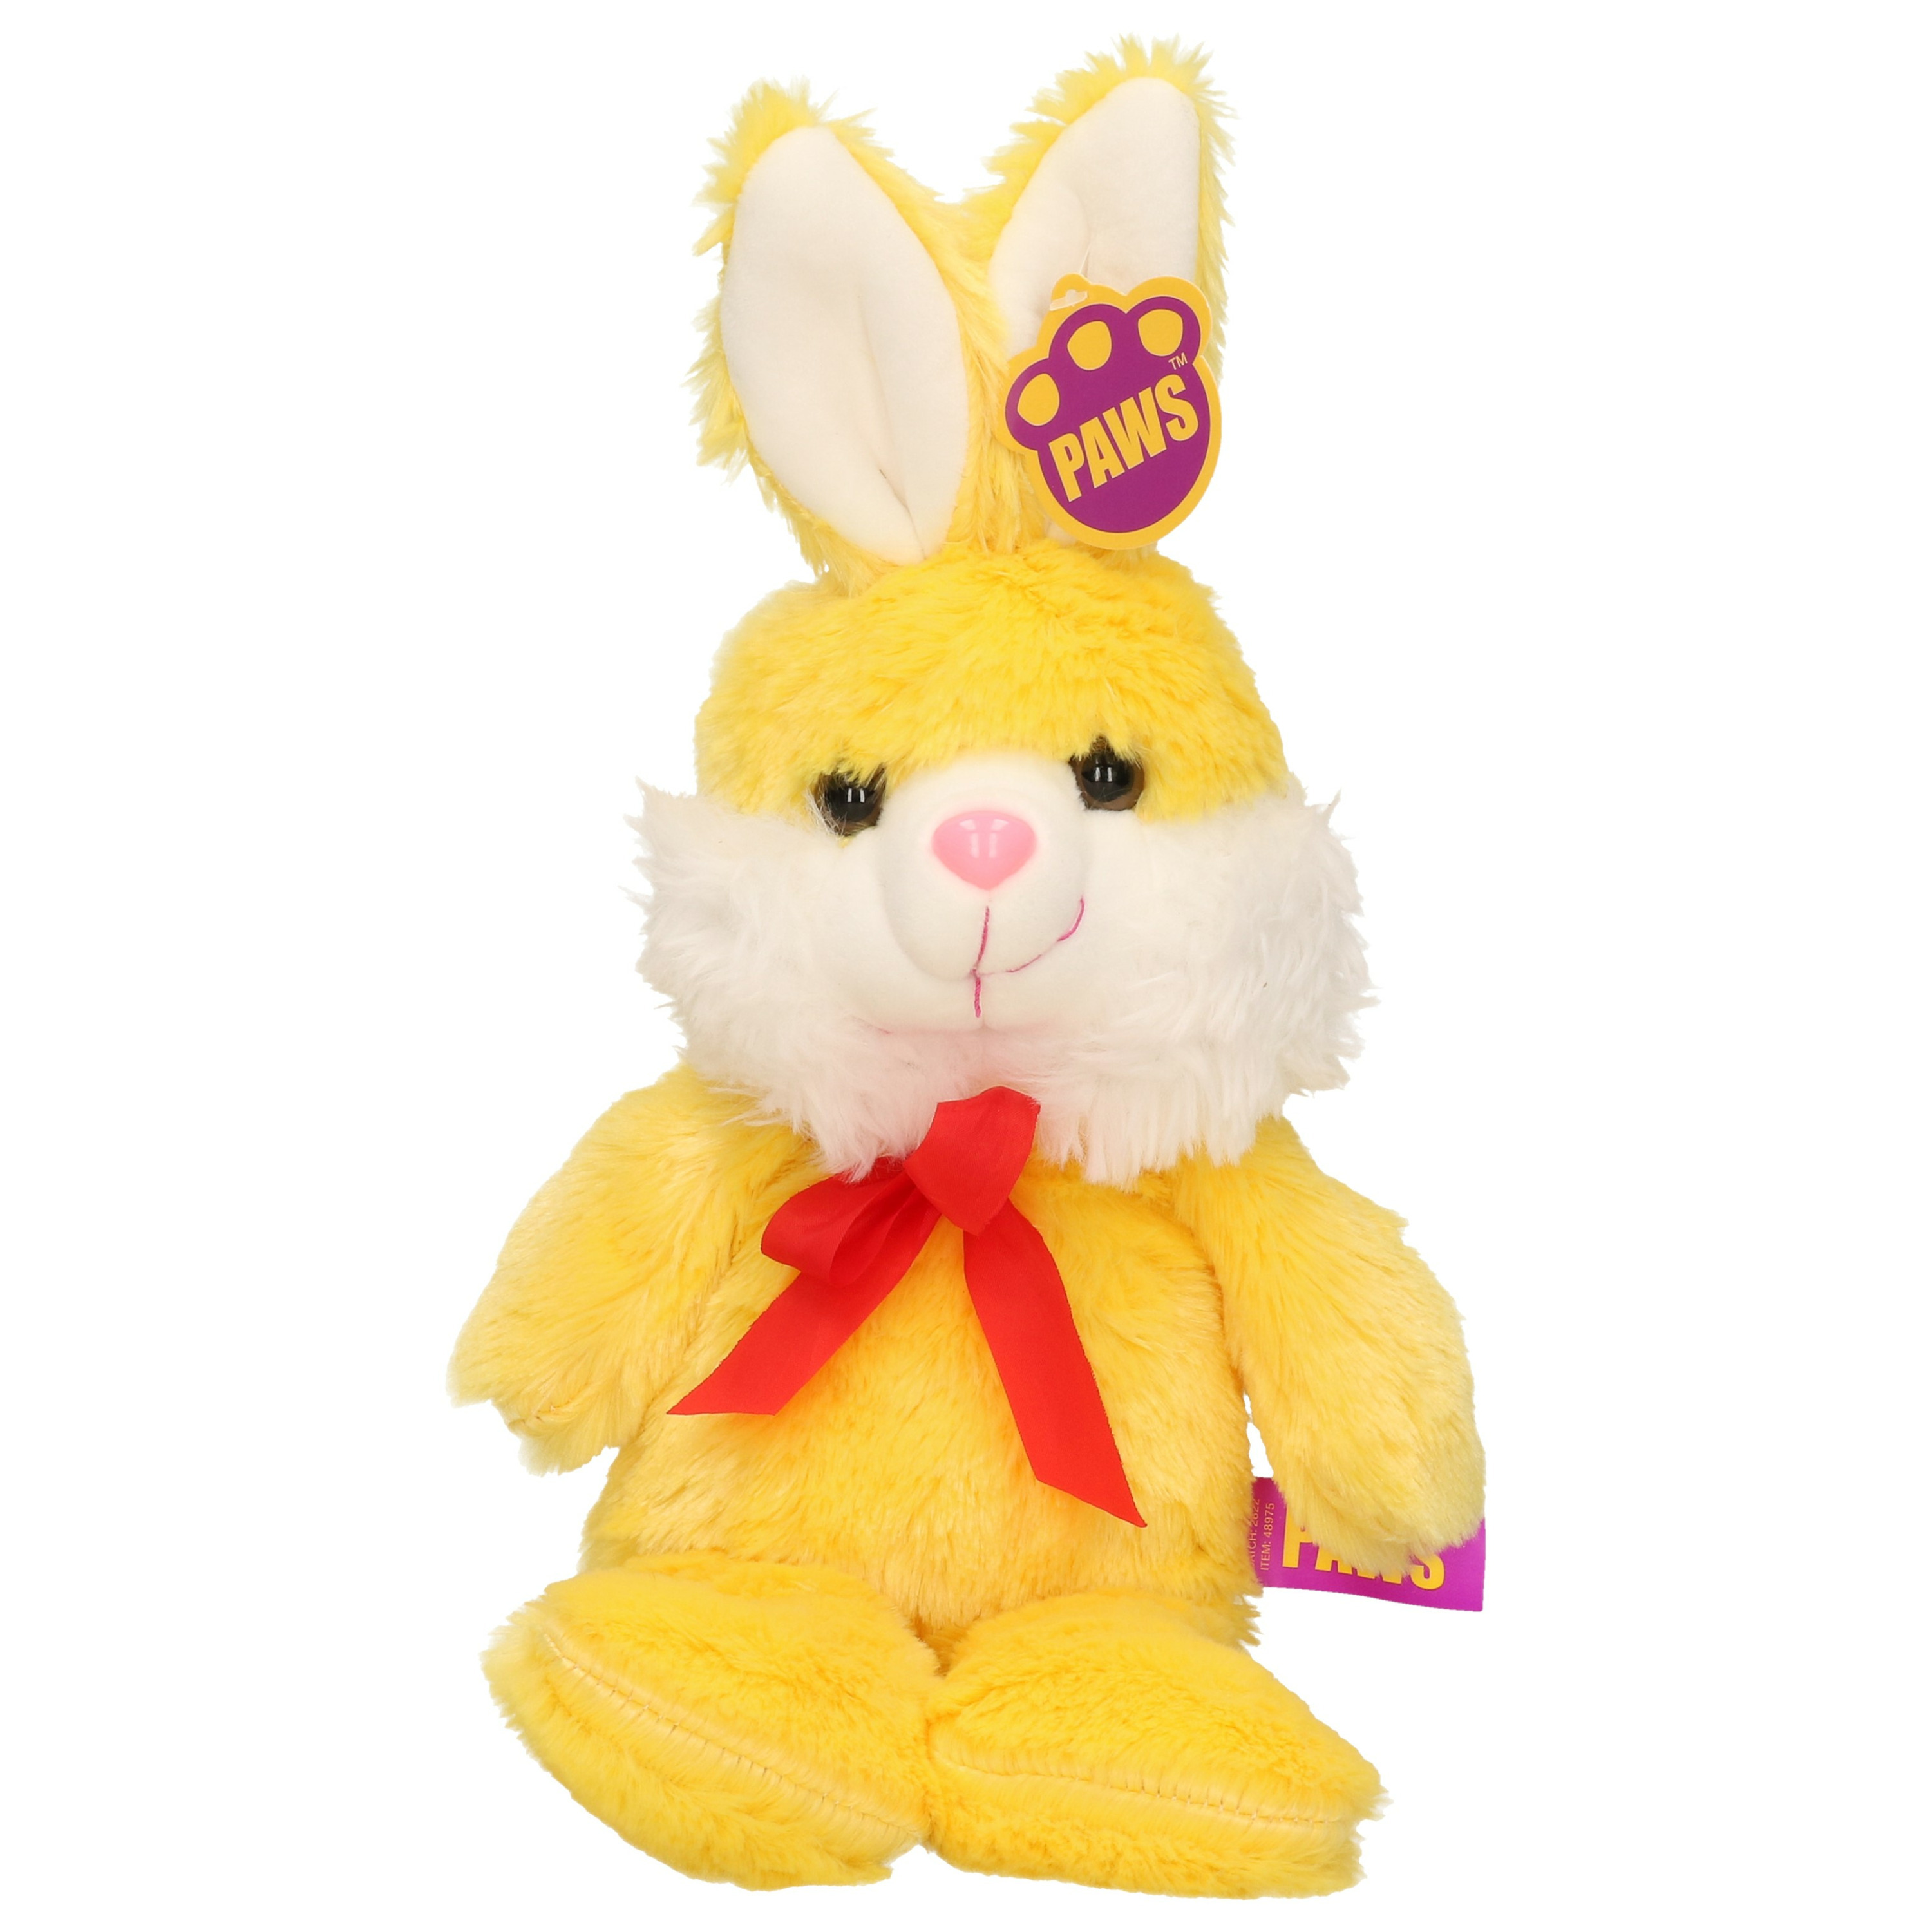 Paashaas-haas-konijn knuffel dier zachte pluche geel cadeau 32 cm met strikje